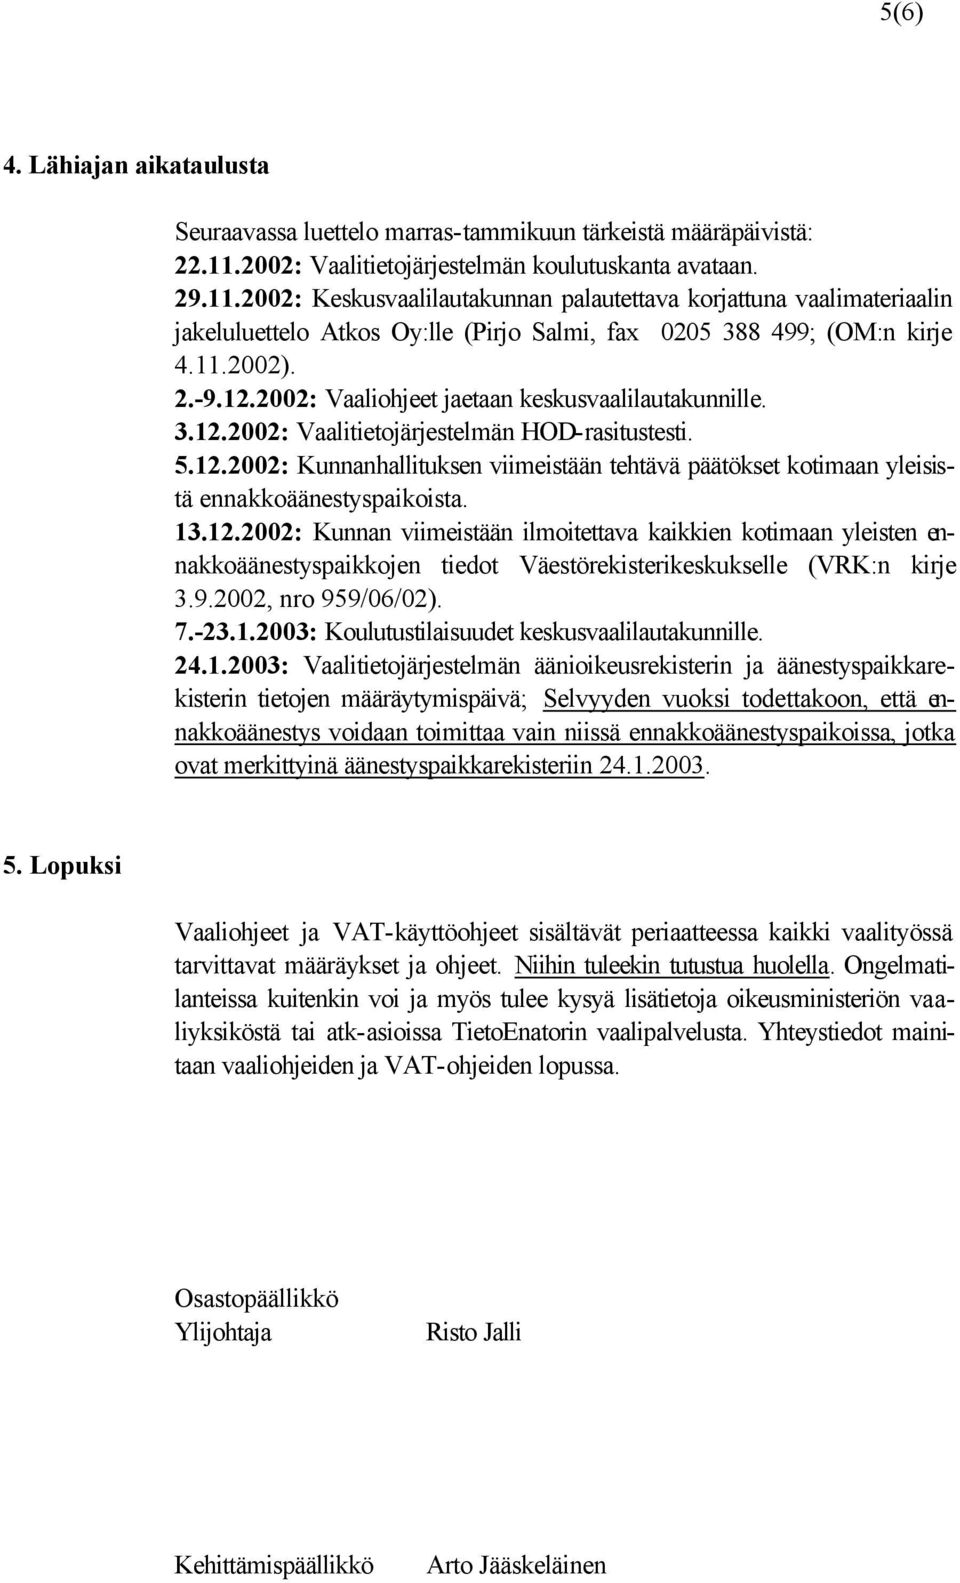 2002: Keskusvaalilautakunnan palautettava korjattuna vaalimateriaalin jakeluluettelo Atkos Oy:lle (Pirjo Salmi, fax 0205 388 499; (OM:n kirje 4.11.2002). 2.-9.12.